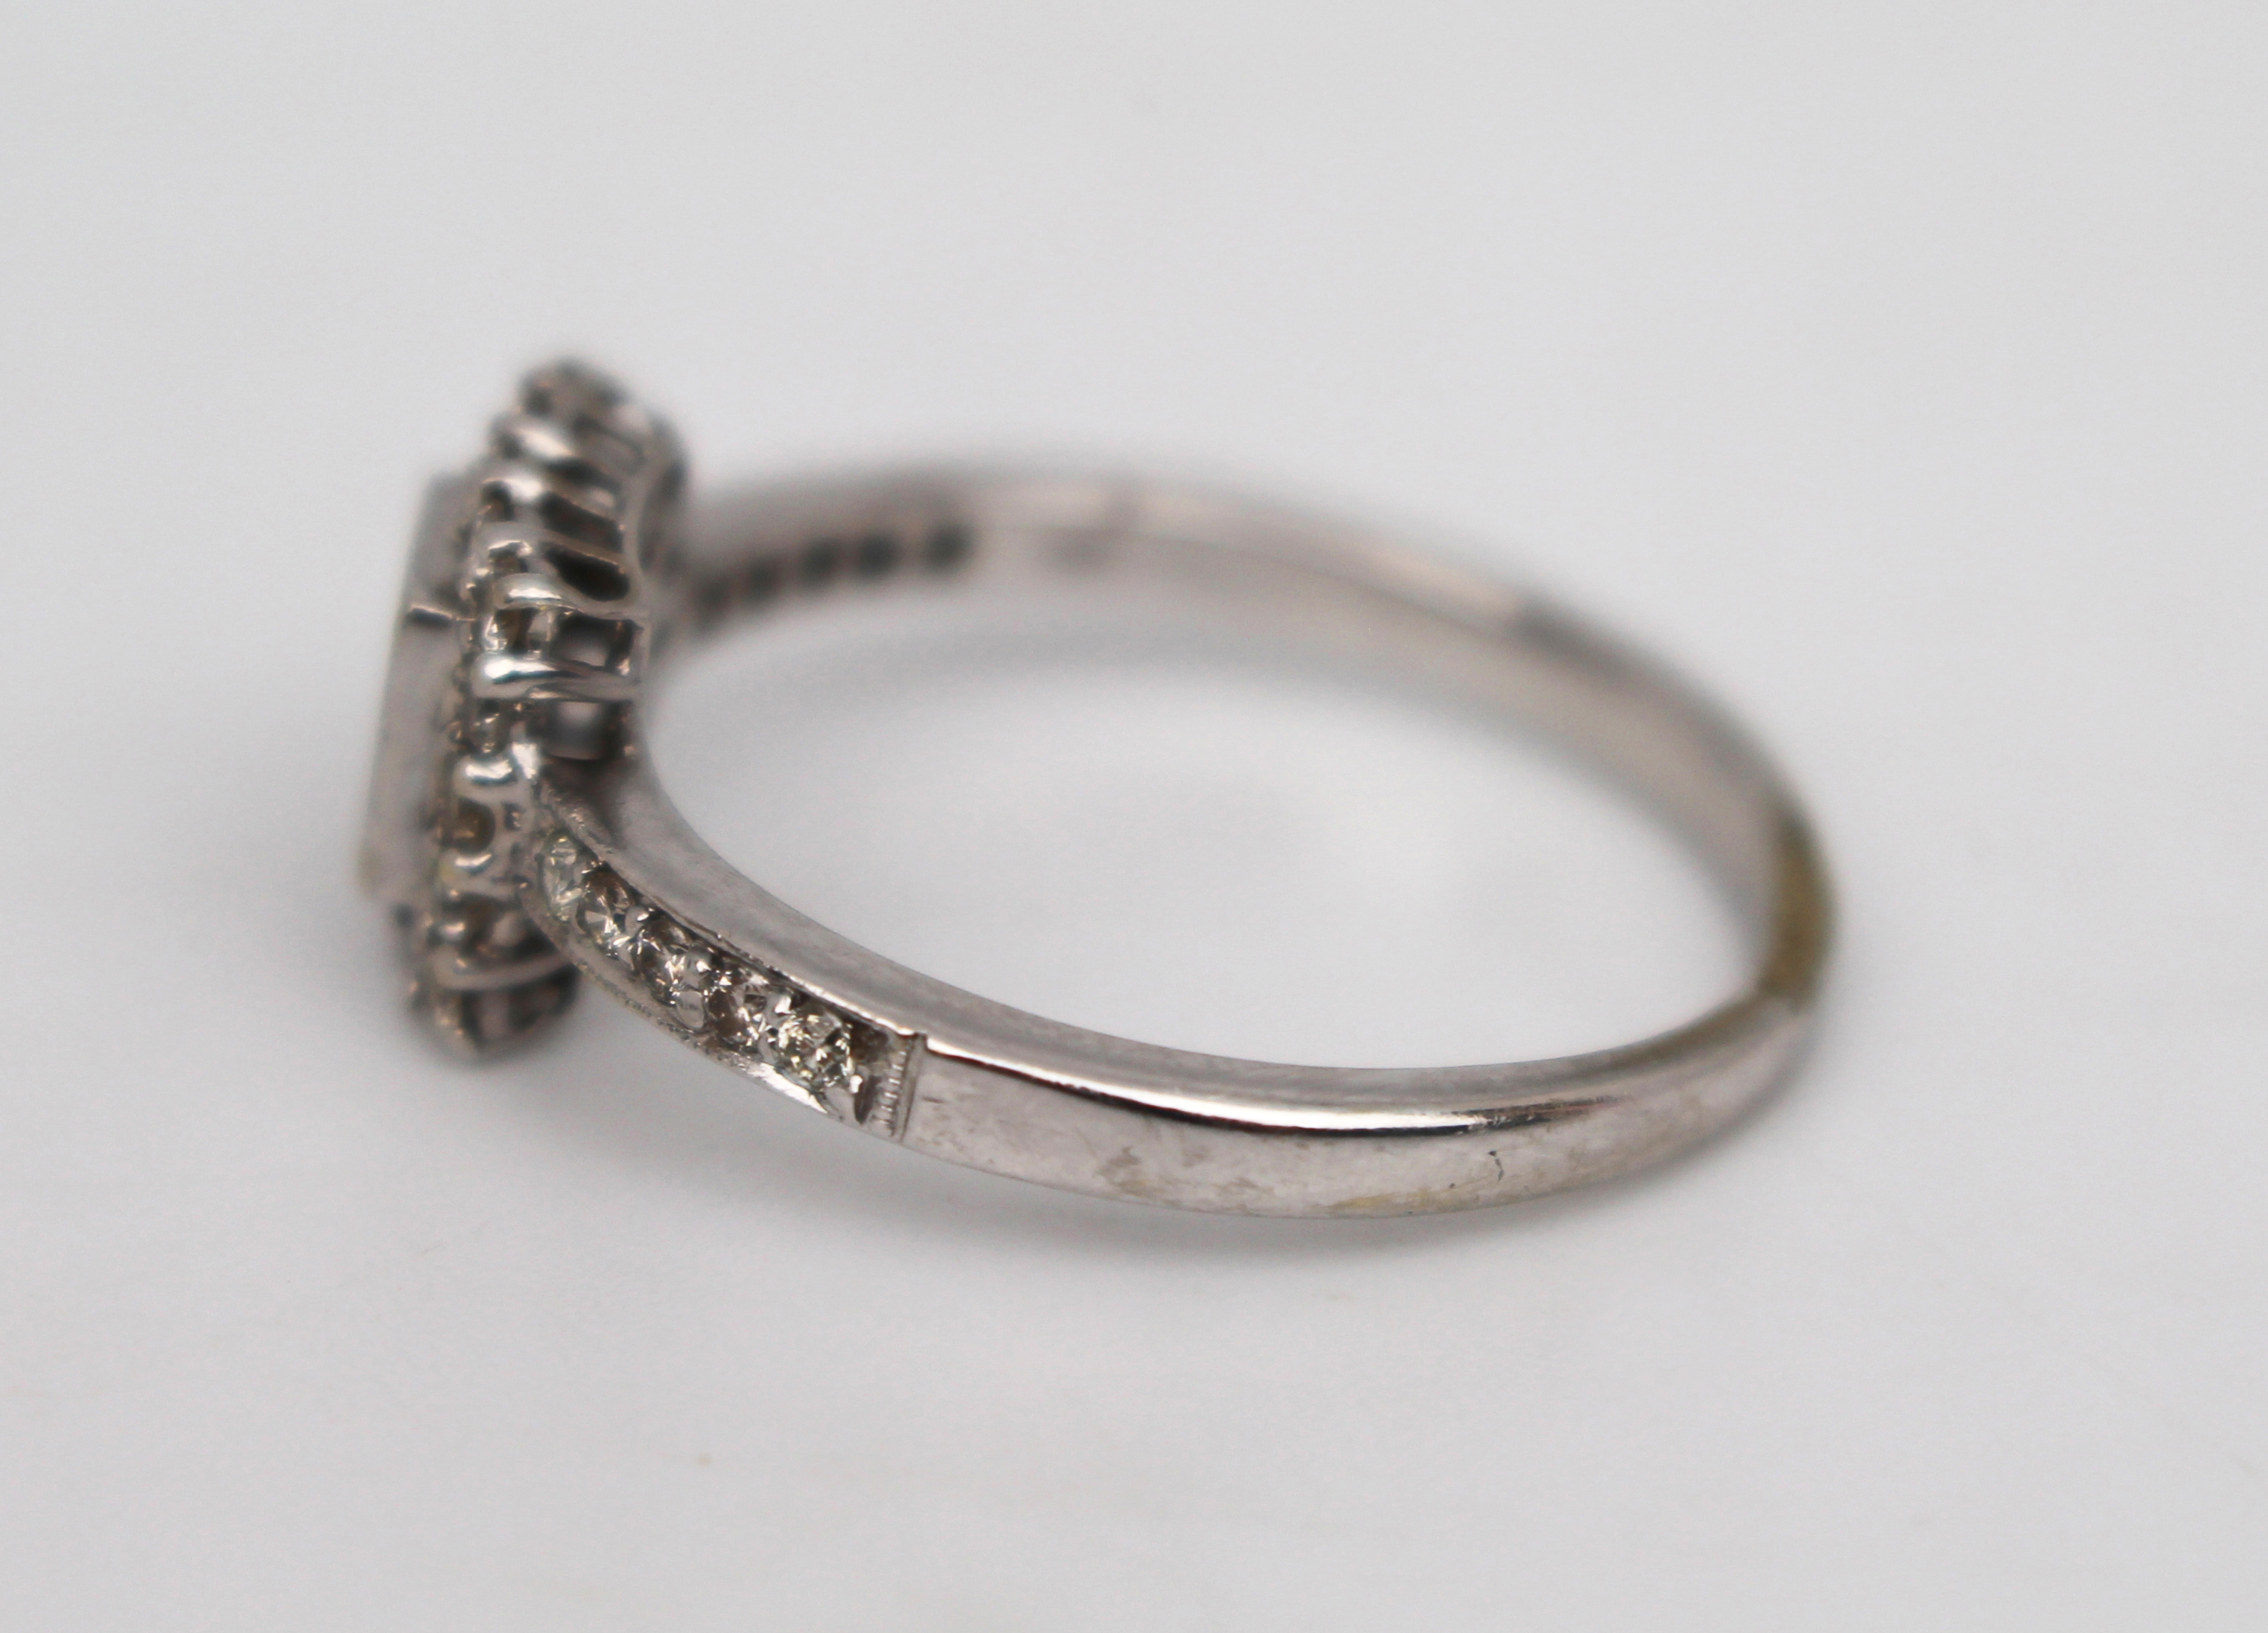 Diamond 18ct White Gold Ring 0.70 carat - Image 6 of 7